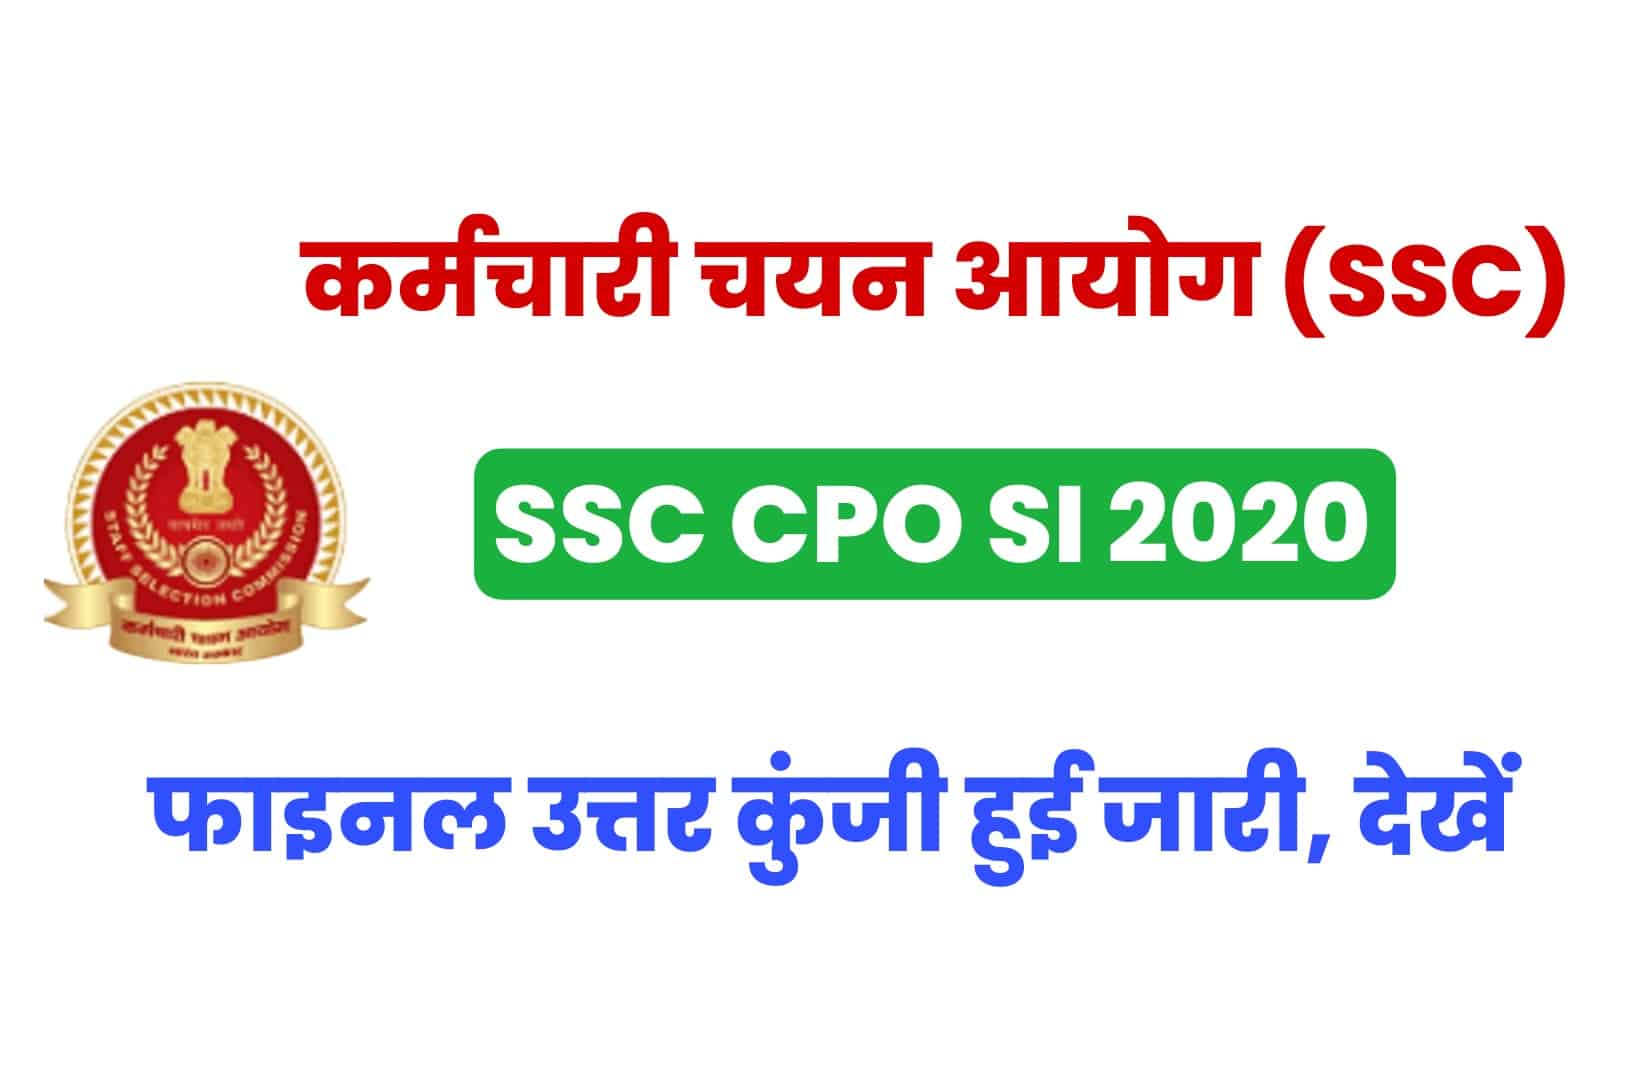 SSC CPO SI 2020 Final Answer Key